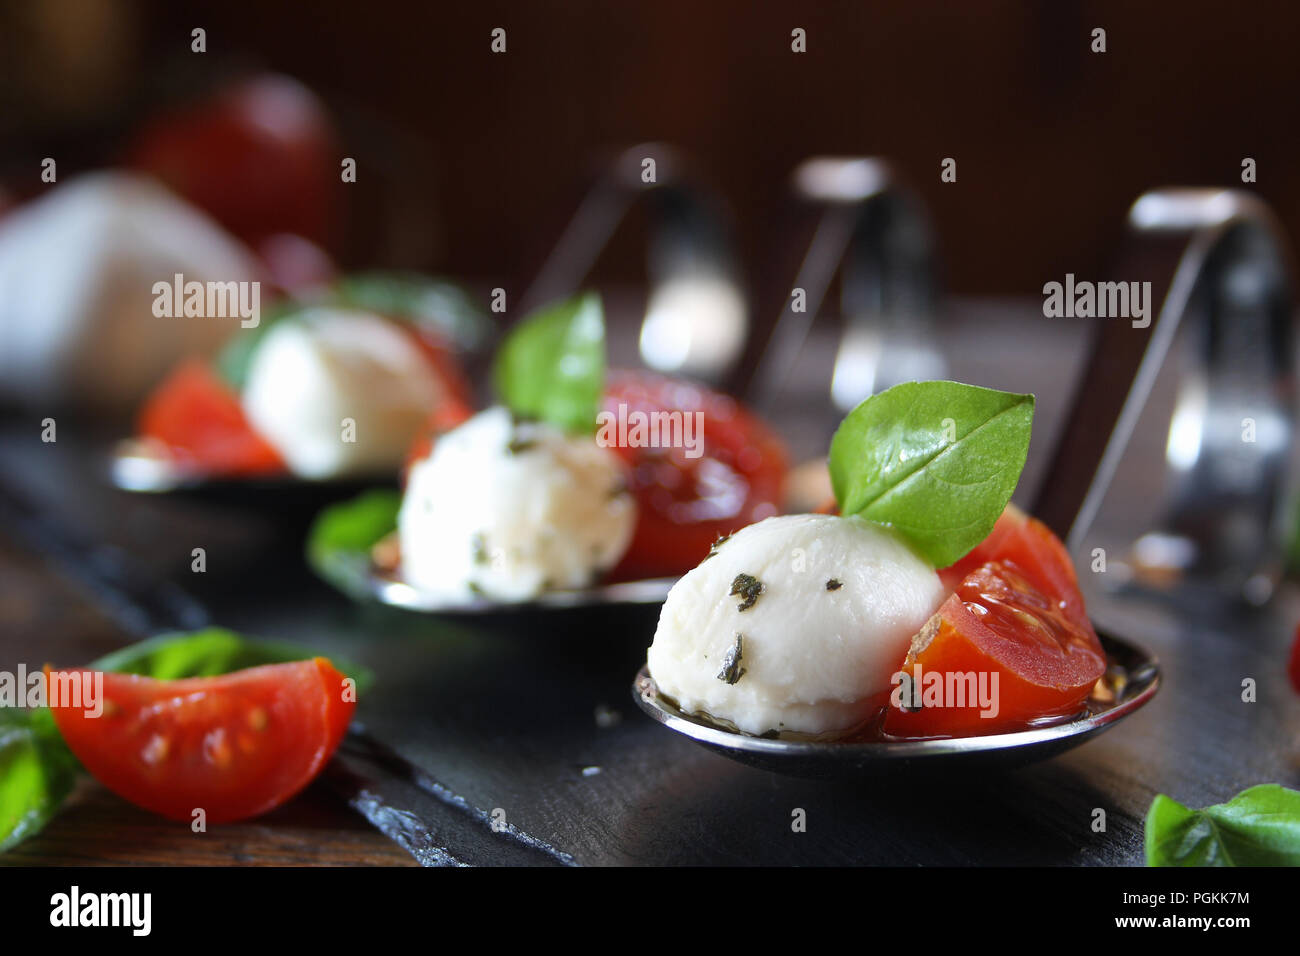 Vorspeisen mit Mozzarella und Tomaten auf Löffel - selektive Fokus  Stockfotografie - Alamy